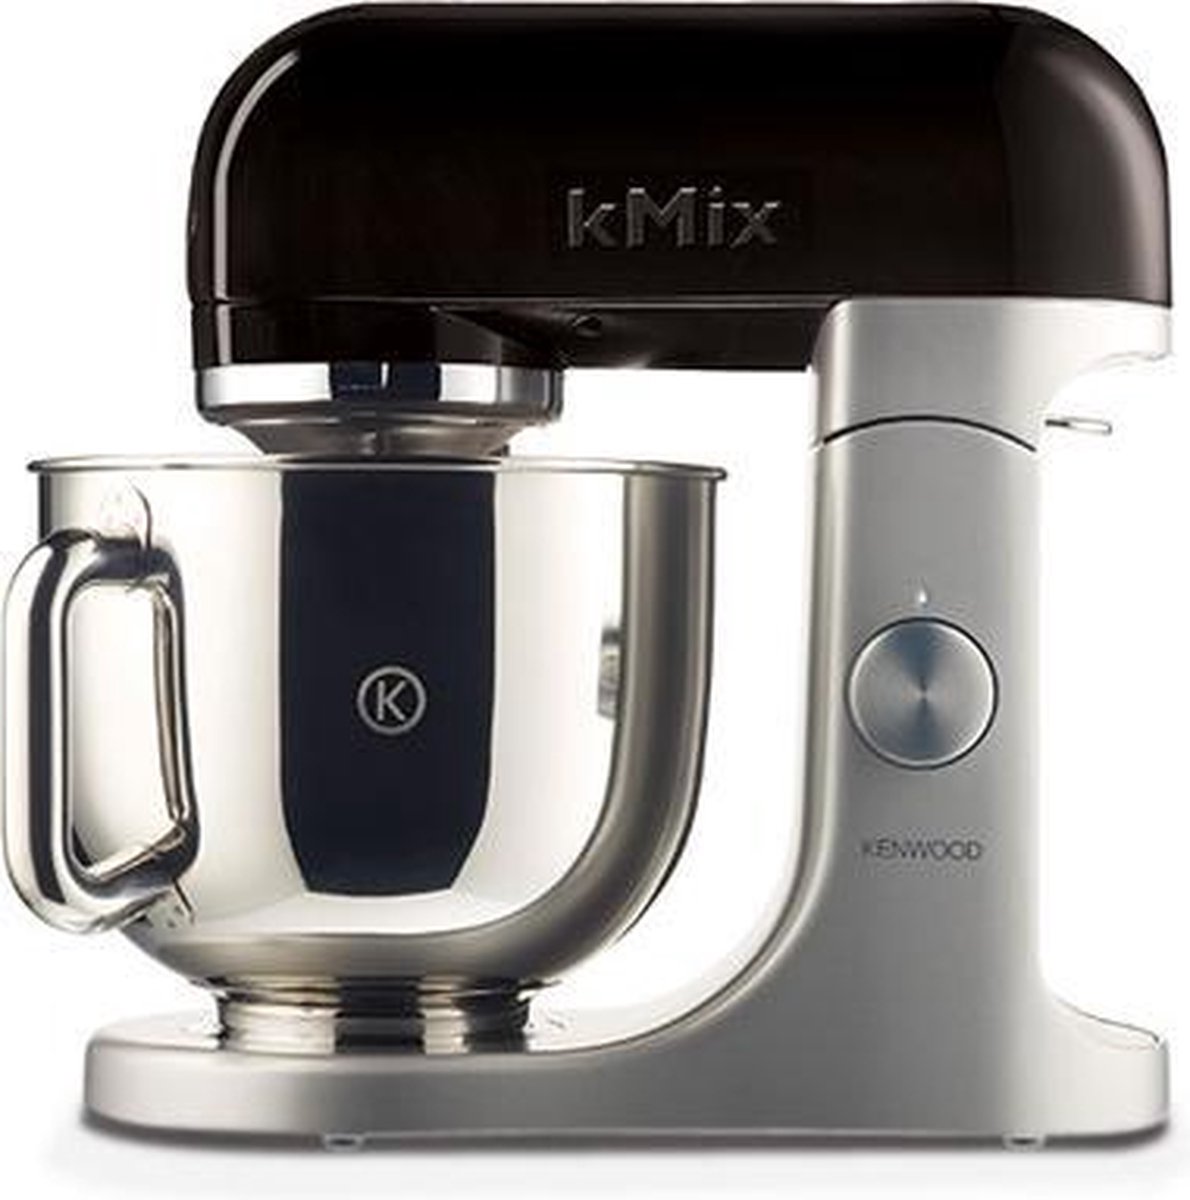 weggooien Ziek persoon Het spijt me Kenwood kMix KMX50BK - Keukenmachine - Zwart | bol.com